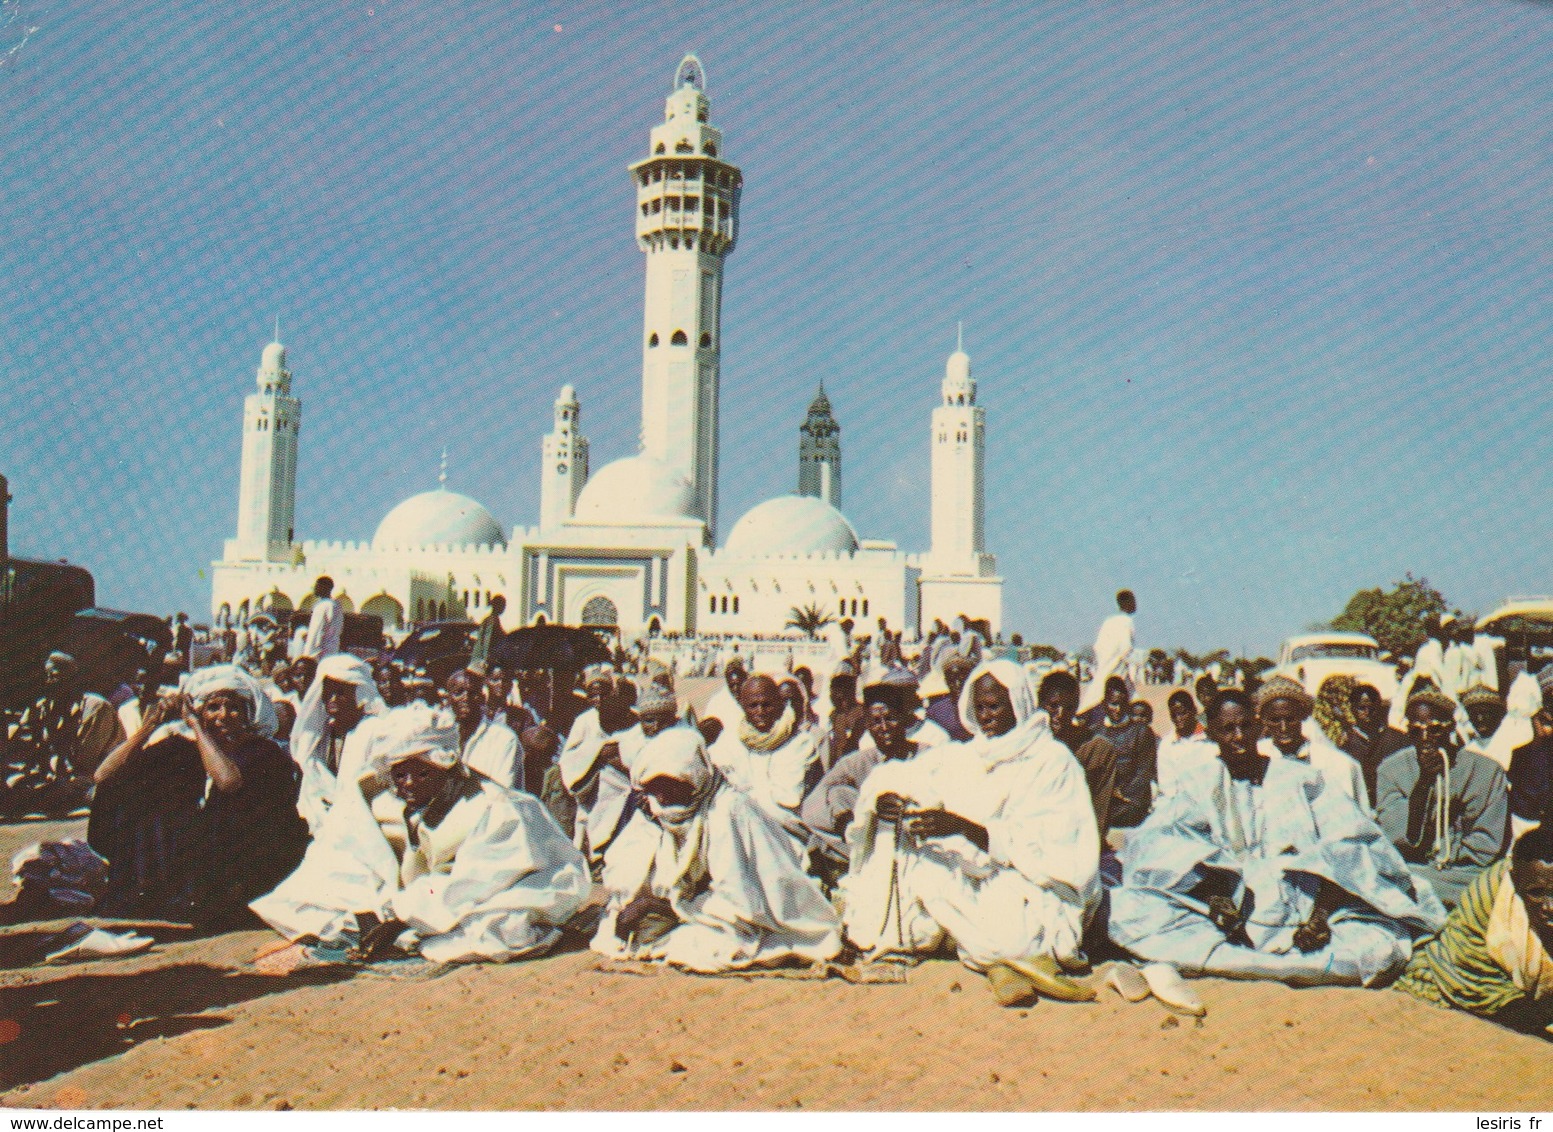 C.P. - PHOTO - IMAGES DU SÉNÉGAL - MOSQUÉE DE TOUBA - JOUR DE TABASKI - G.I.A. - RENAUDEAU - PC 13 - - Senegal